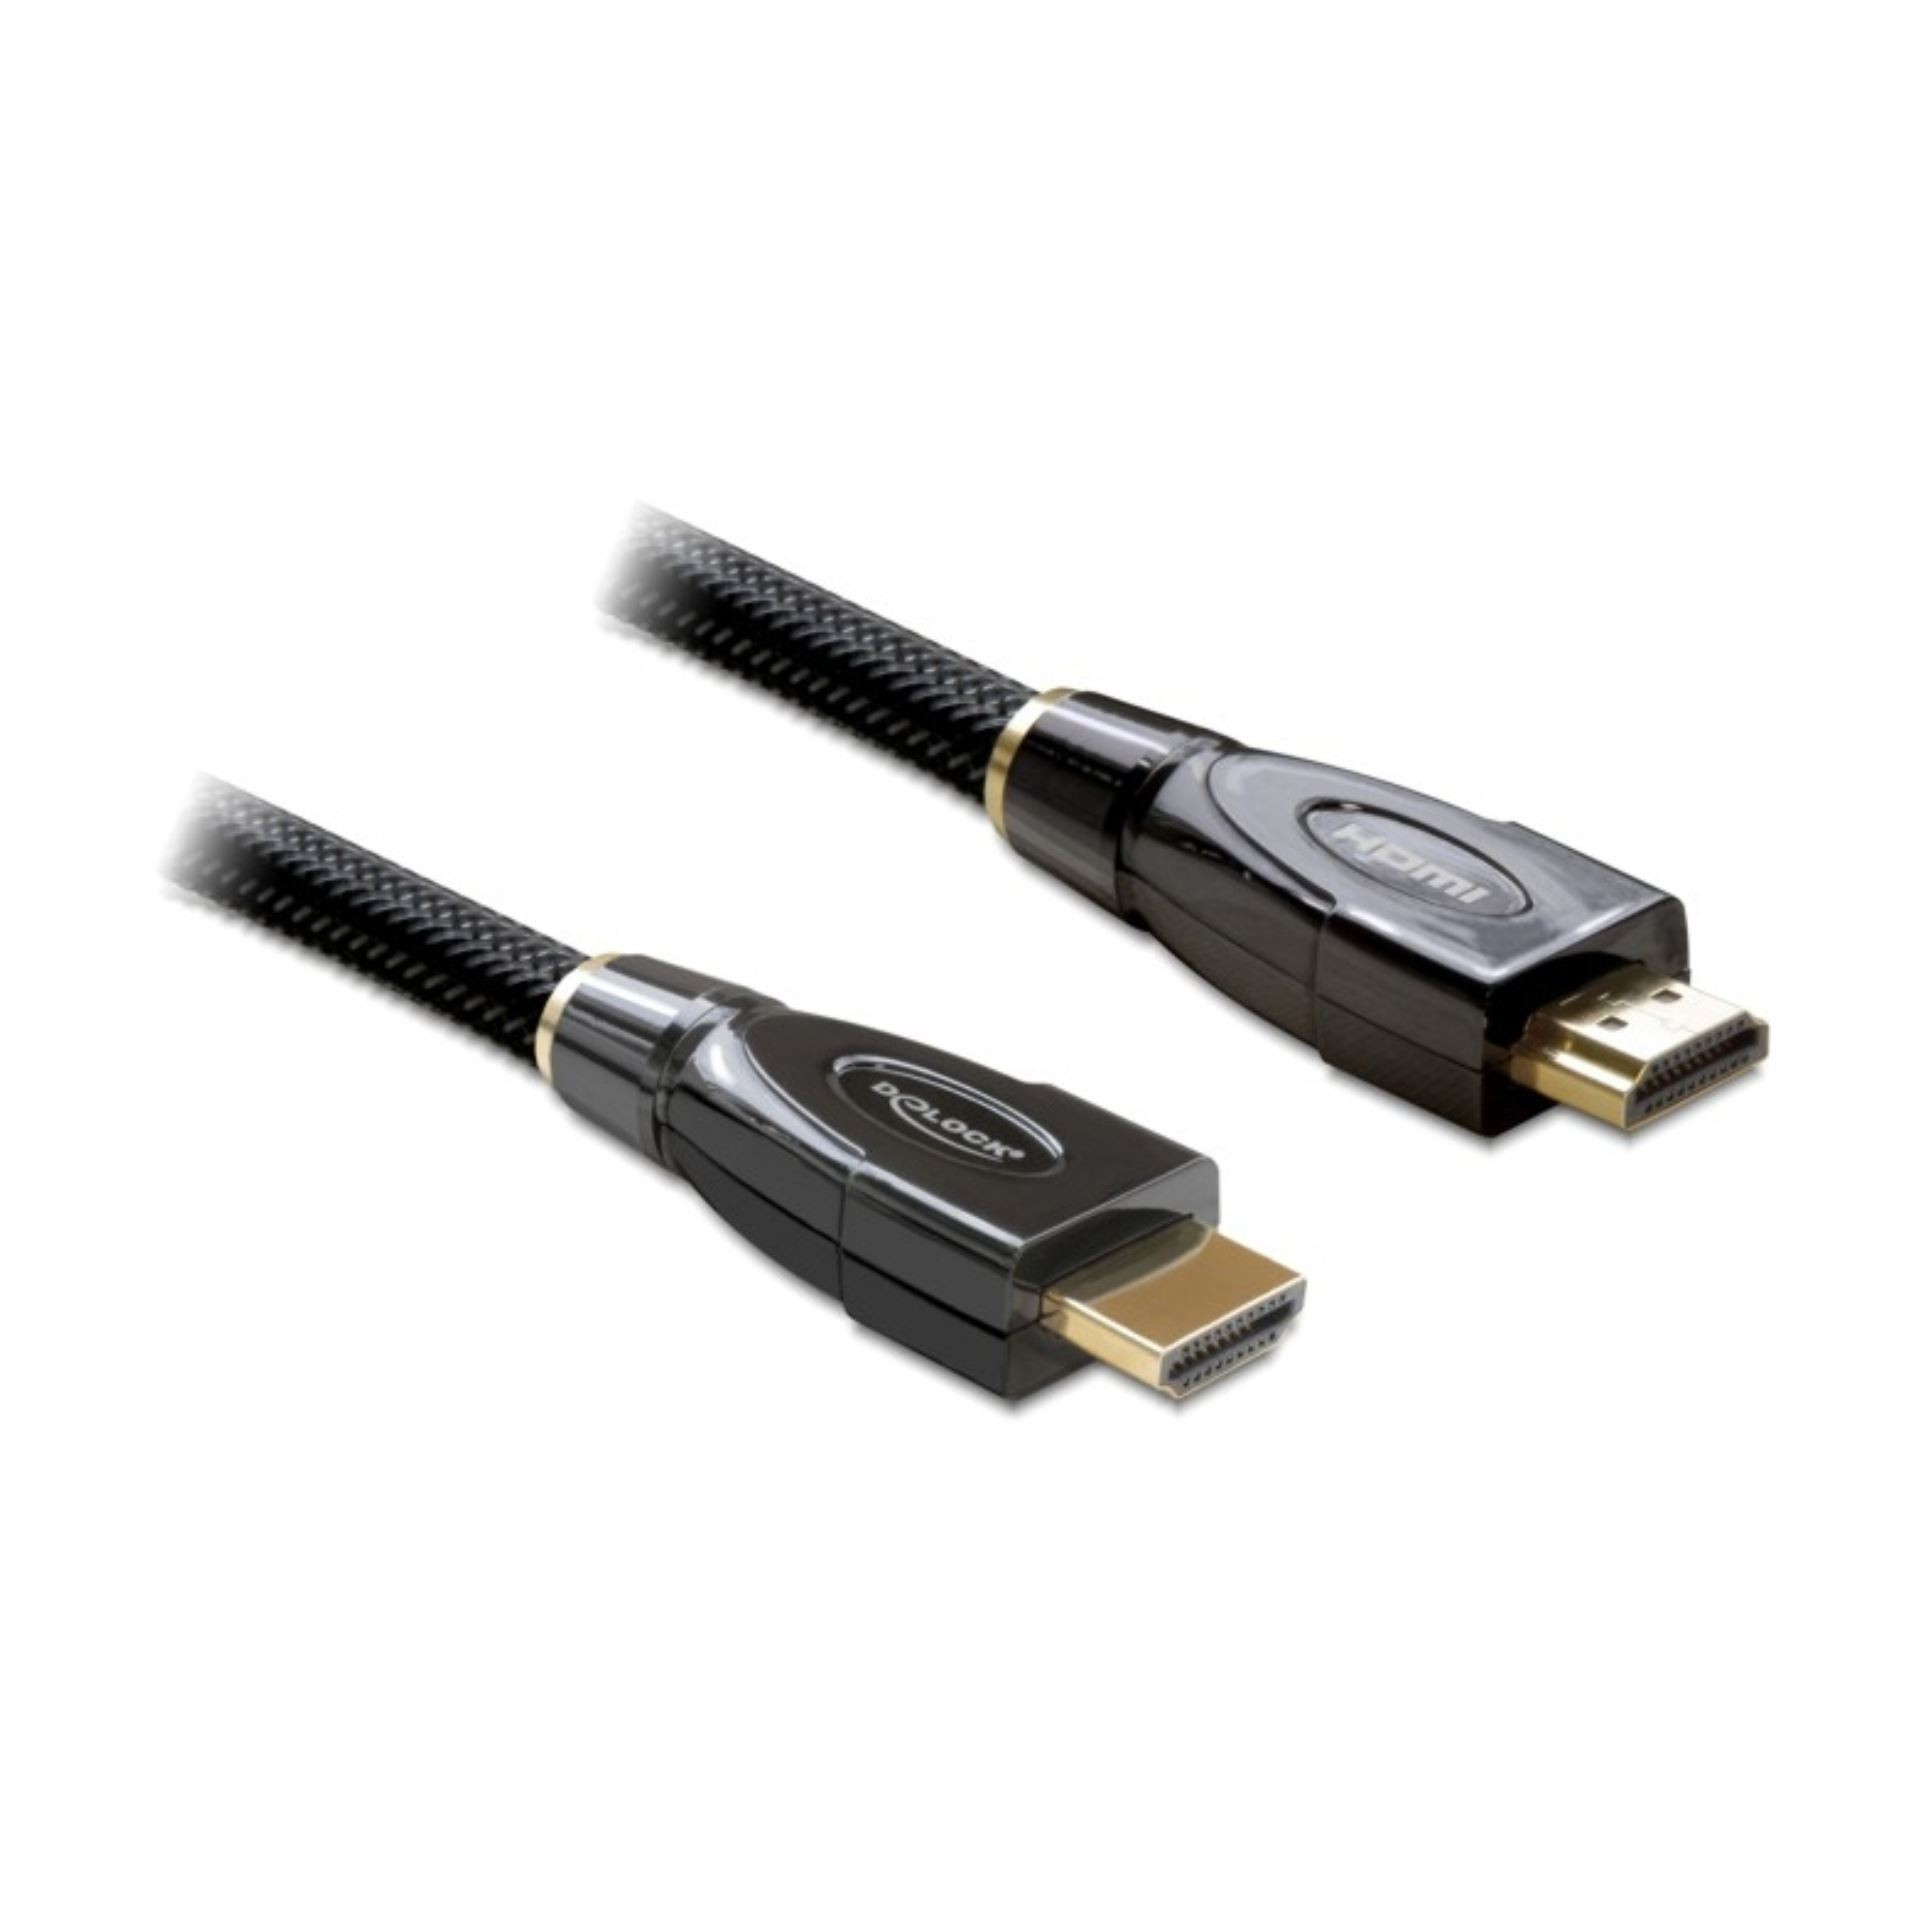 HDMI kabel z mrežno povezavo  3m Delock črn High Speed Premium